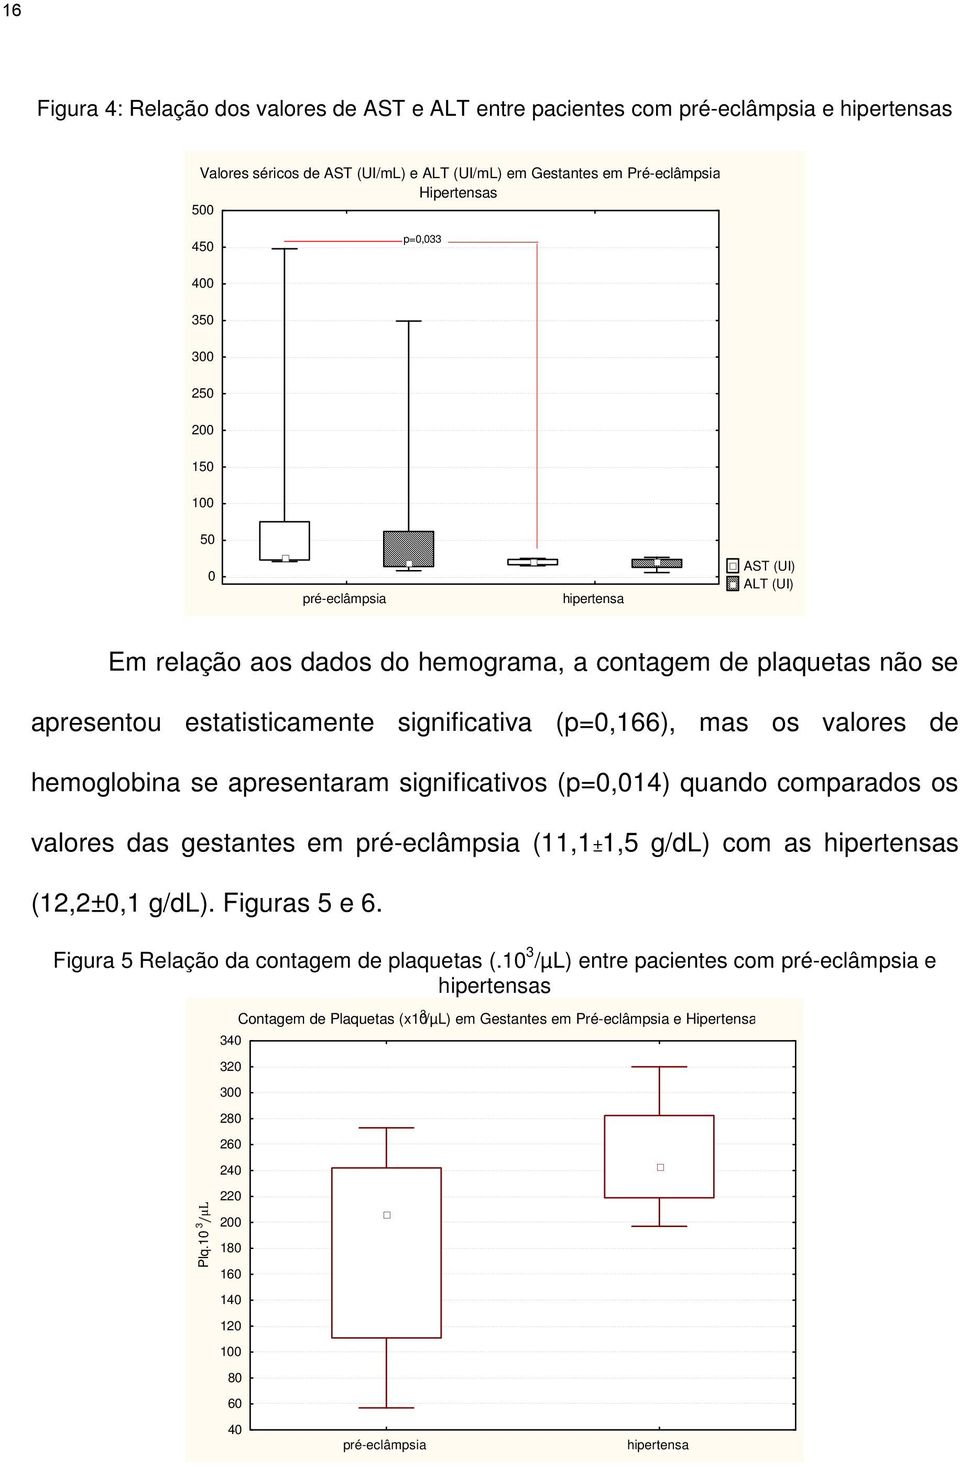 os valores de hemoglobina se apresentaram significativos (p=0,014) quando comparados os valores das gestantes em pré-eclâmpsia (11,1±1,5 g/dl) com as hipertensas (12,2±0,1 g/dl). Figuras 5 e 6.